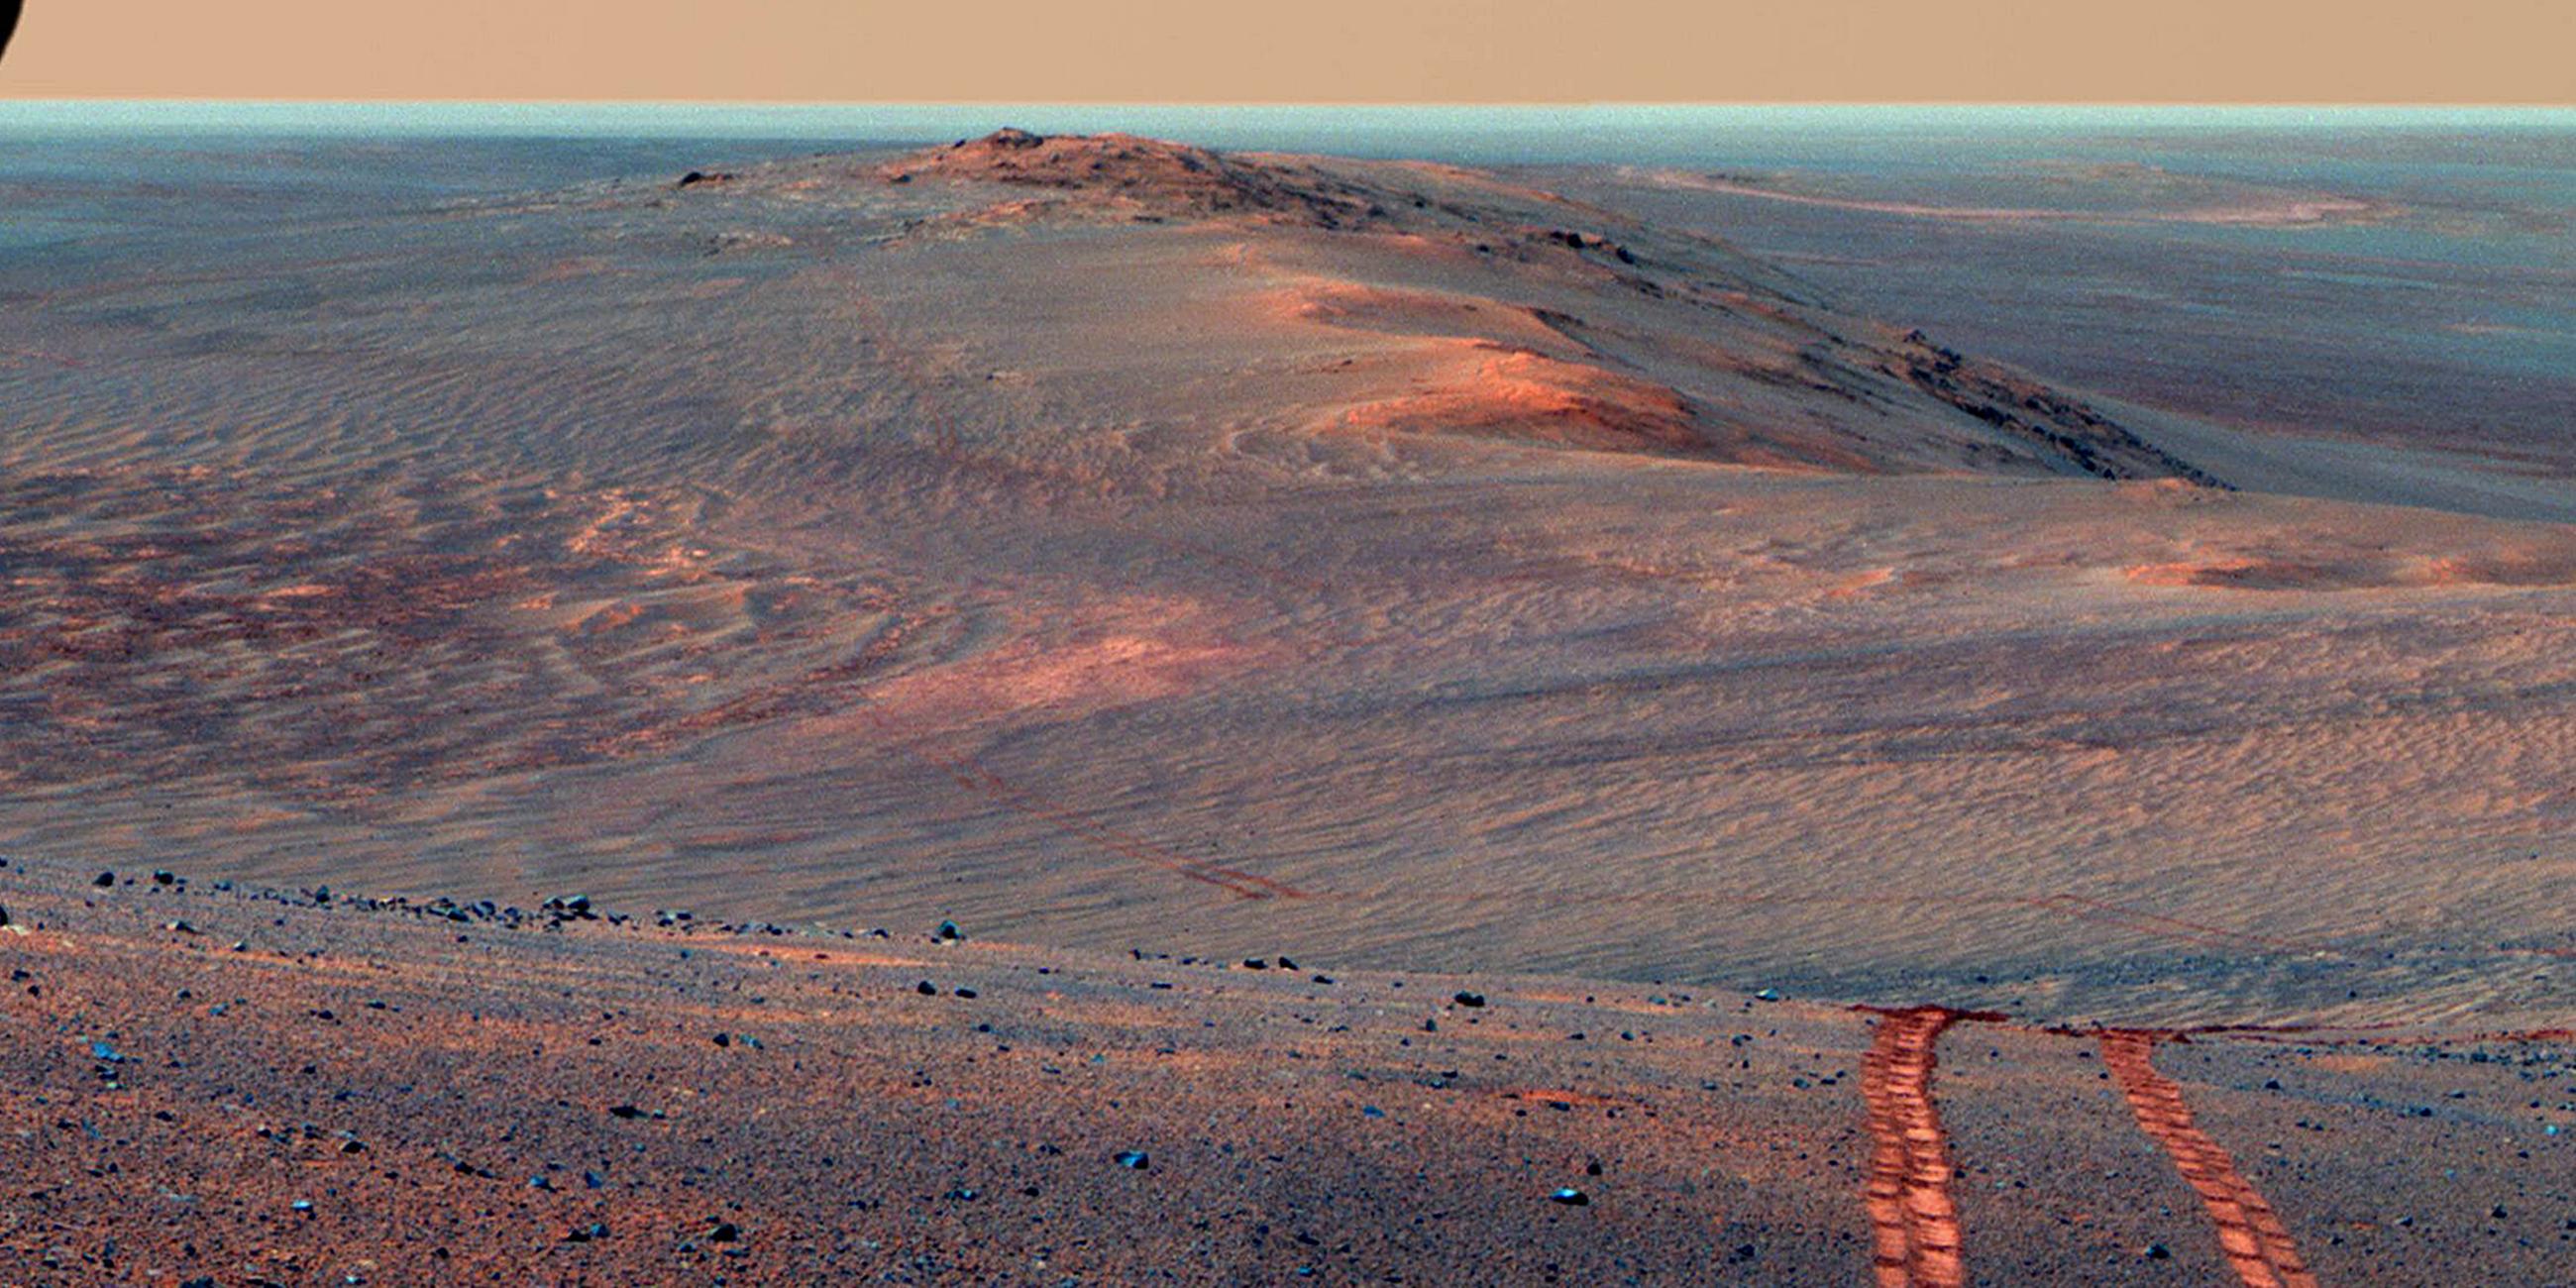 Archiv: Endeavour Krater aufgenommen vom Mars-Rover "Opportunity" am 15.08.2014